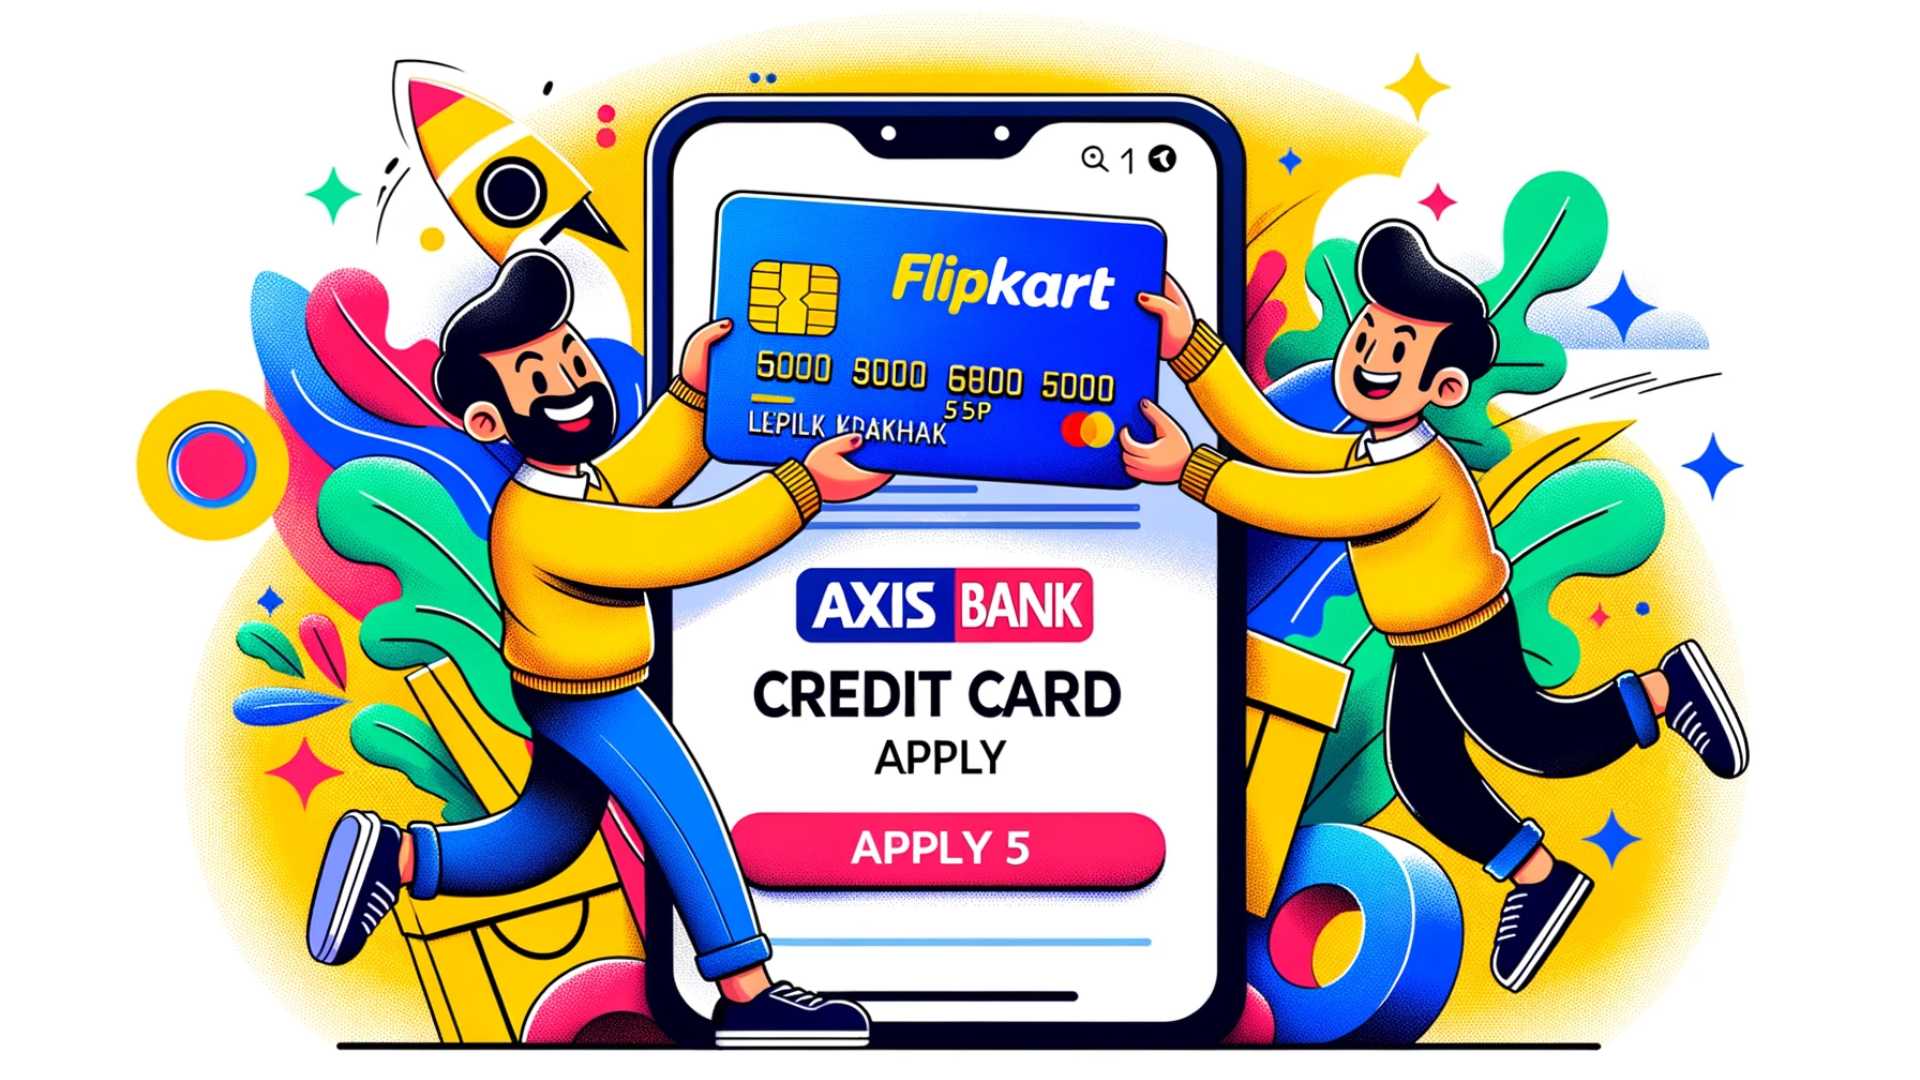 Axis Bank Credit Card Apply